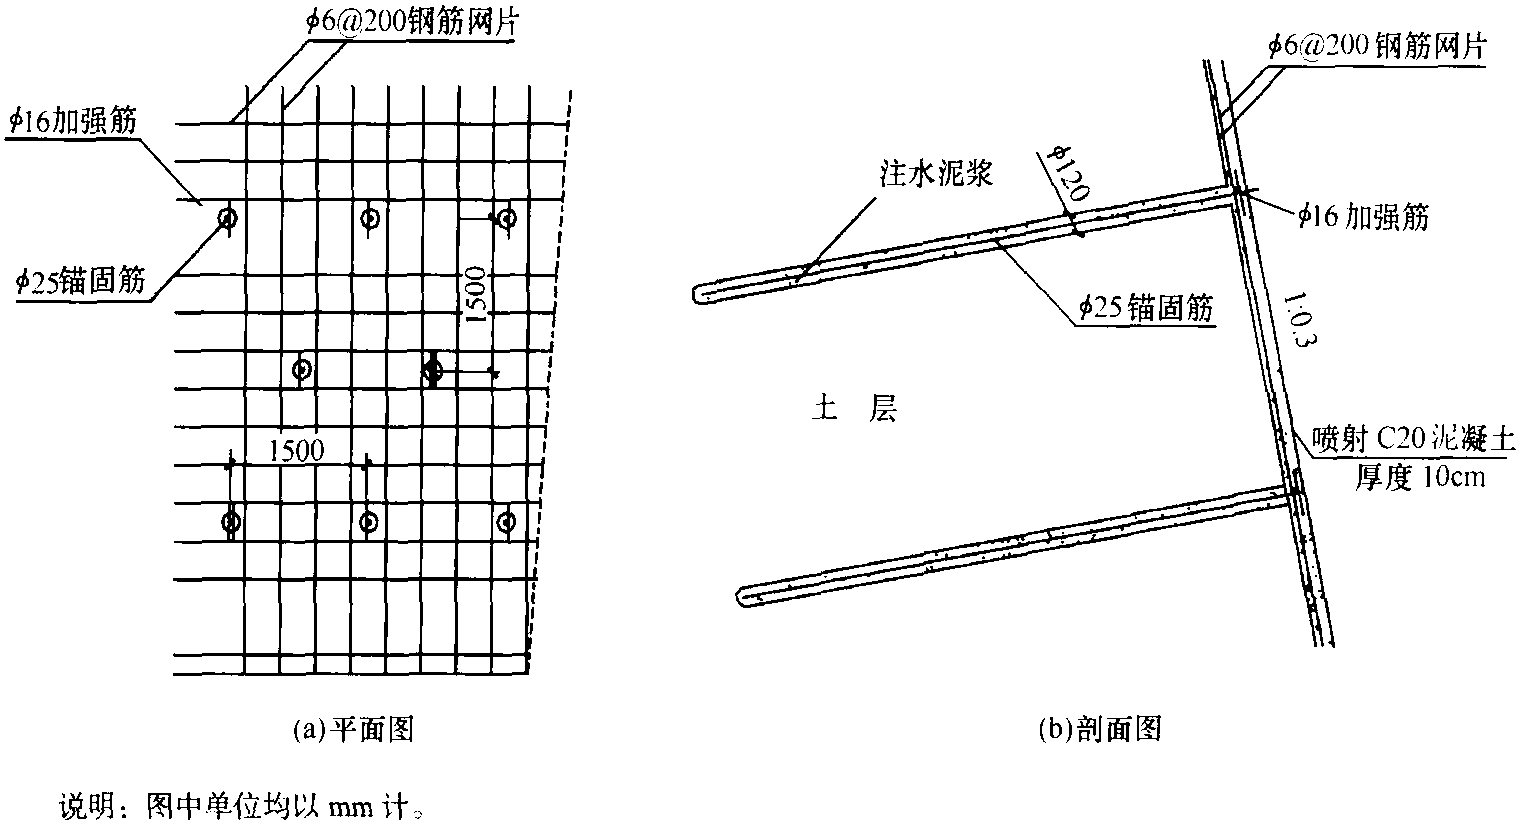 图1-7 土钉墙细部构造图